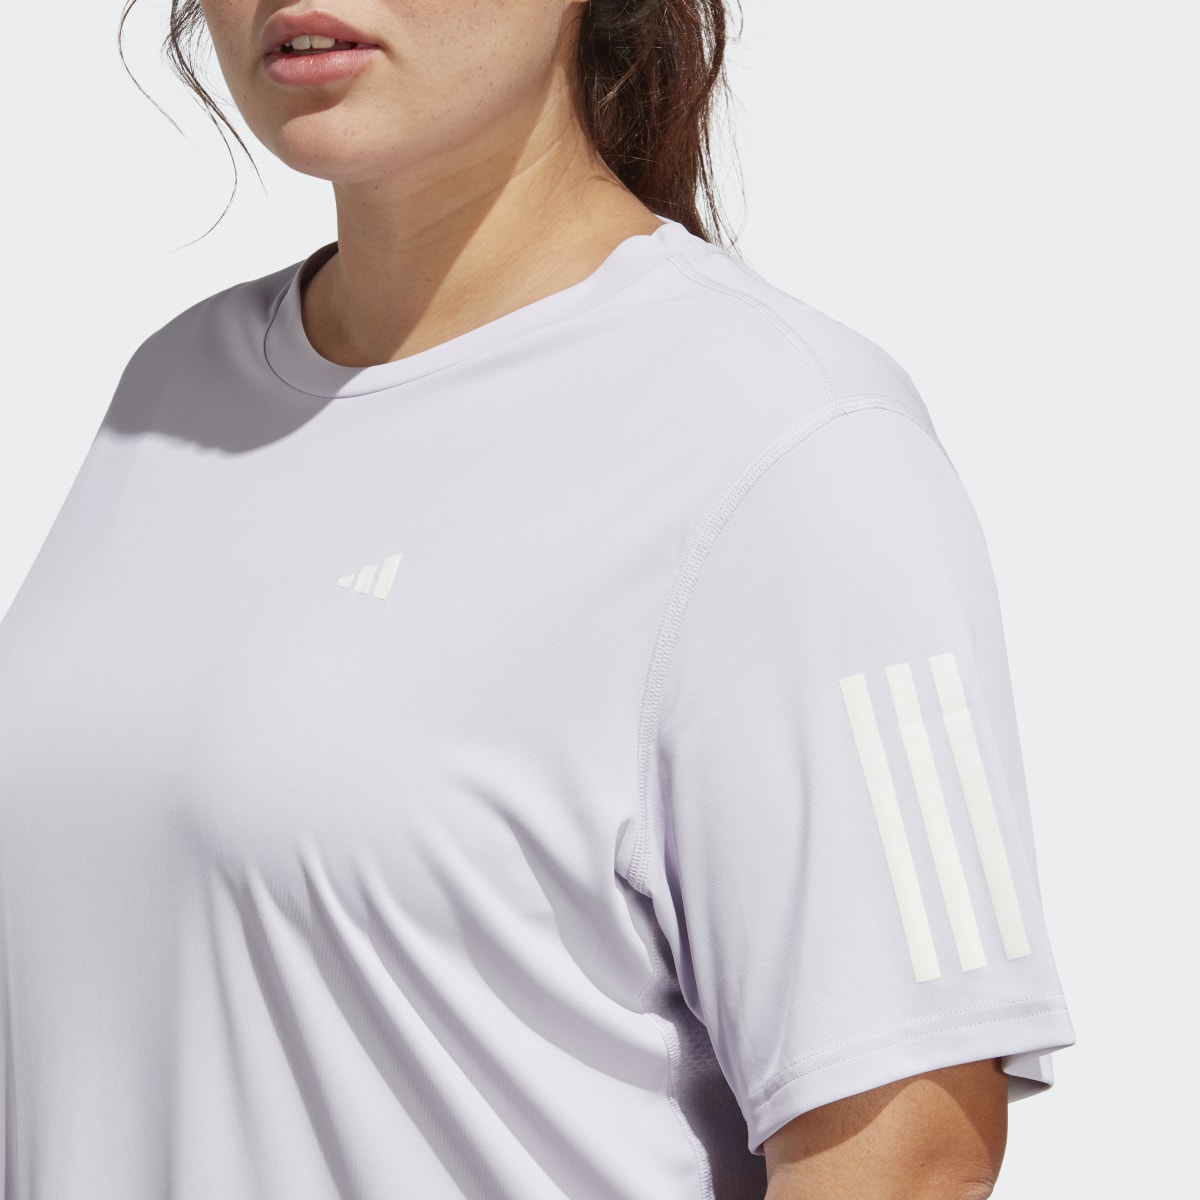 Adidas T-shirt Own the Run (Curvy). 6